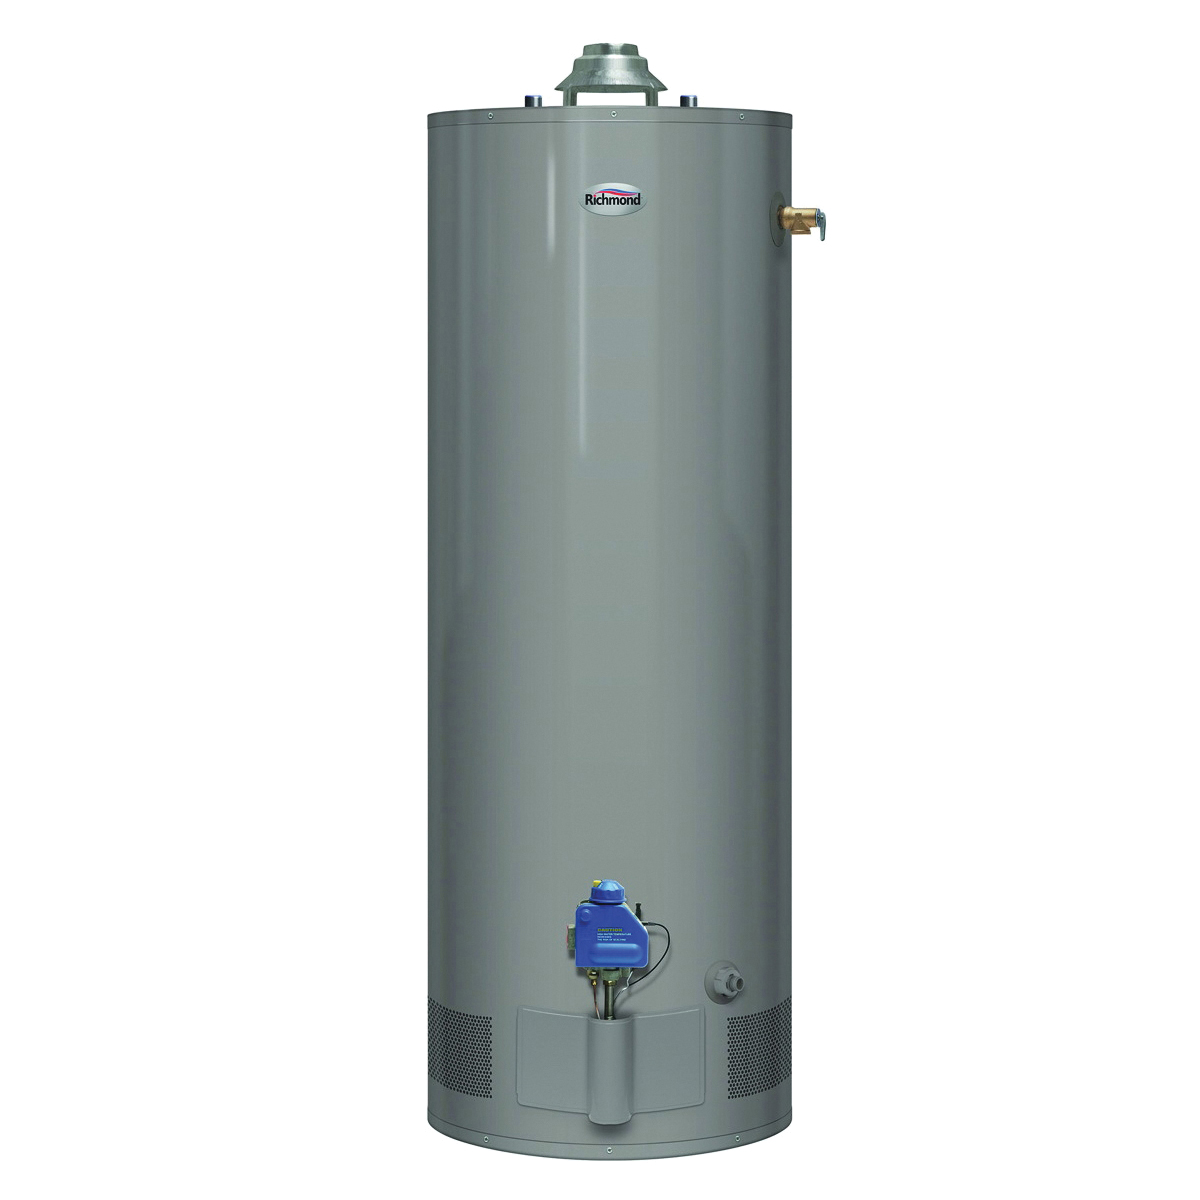 Essential Series 6G30S-30F3 Gas Water Heater, Natural Gas, 30 gal Tank, 52 gph, 30000 Btu/hr BTU